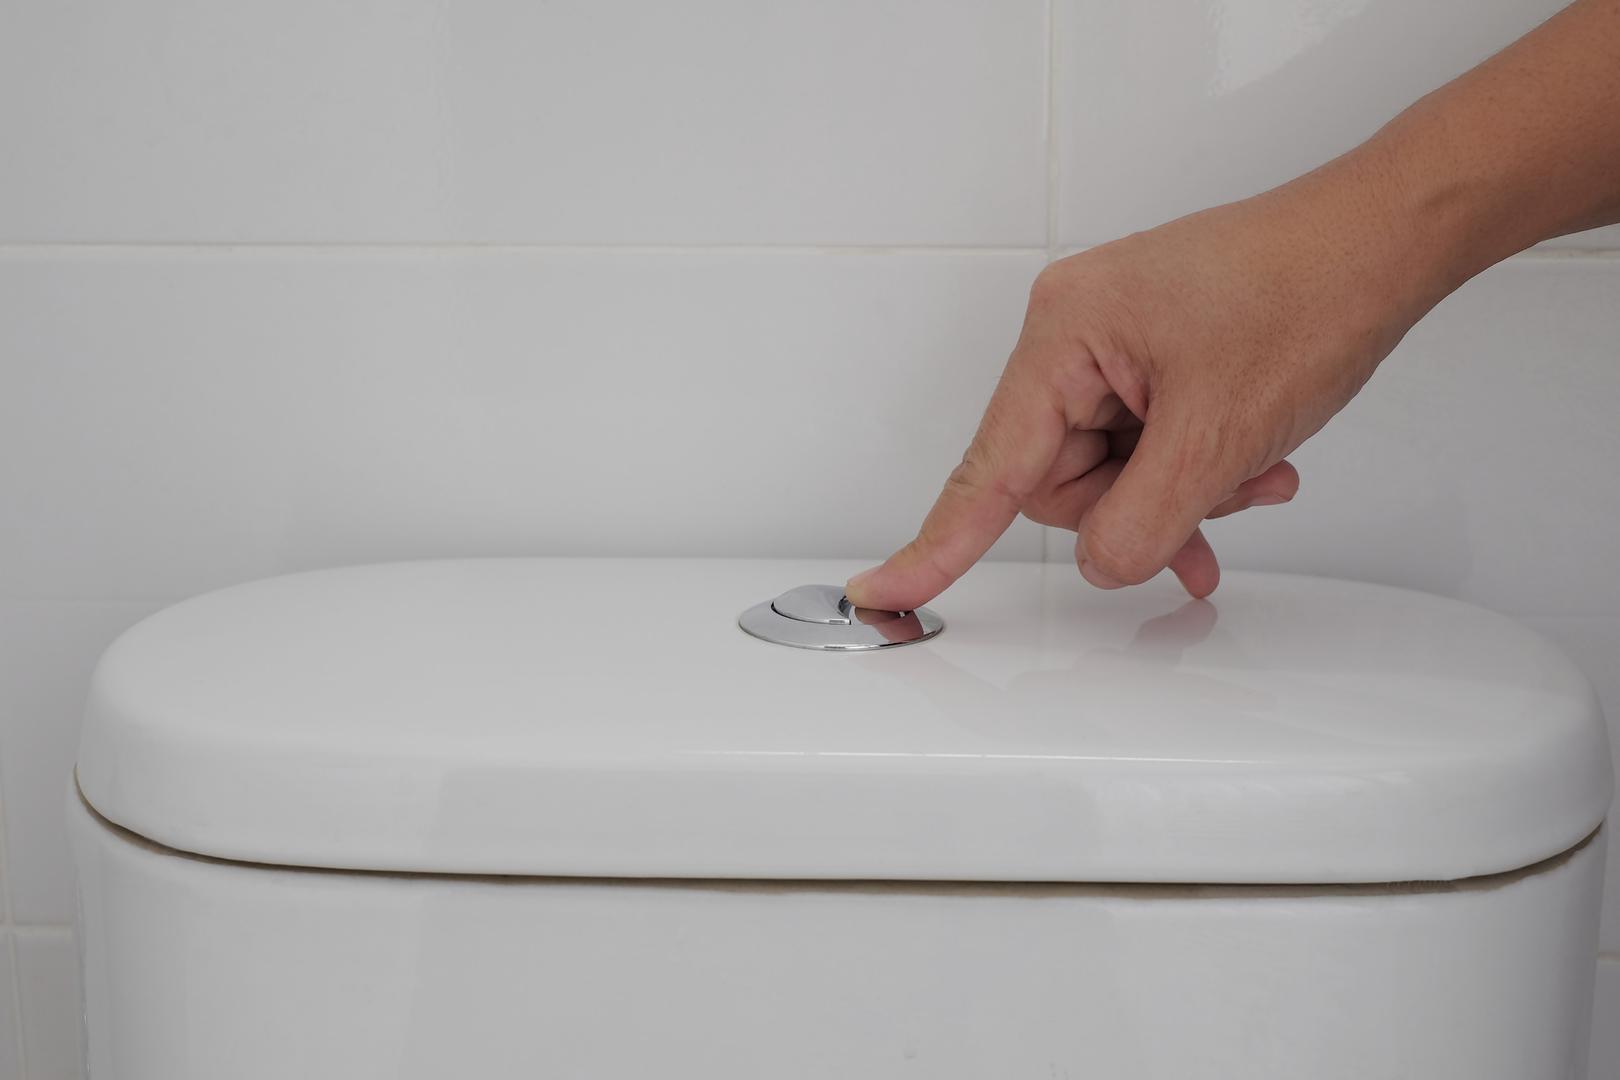 Kada obavite ono što ste trebali na WC-u, jedna je stvar koju obavezno trebate učiniti prije nego što pustite vodu.